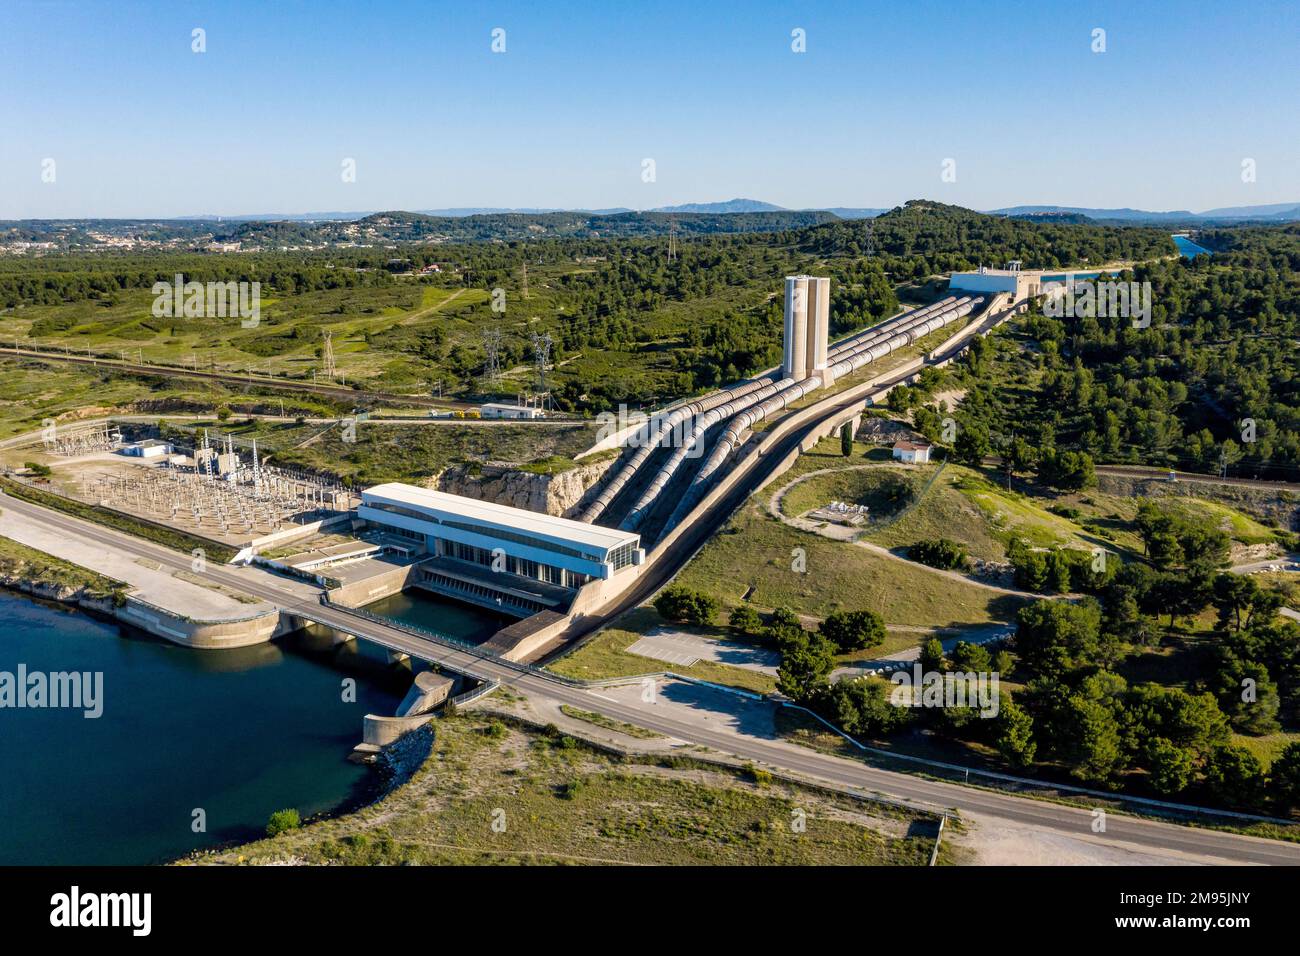 Saint-Chamas (sud-est de la France) : vue aérienne de la centrale hydroélectrique exploitée par EDF (Office français de l'électricité) sur l'etang de Berre p Banque D'Images